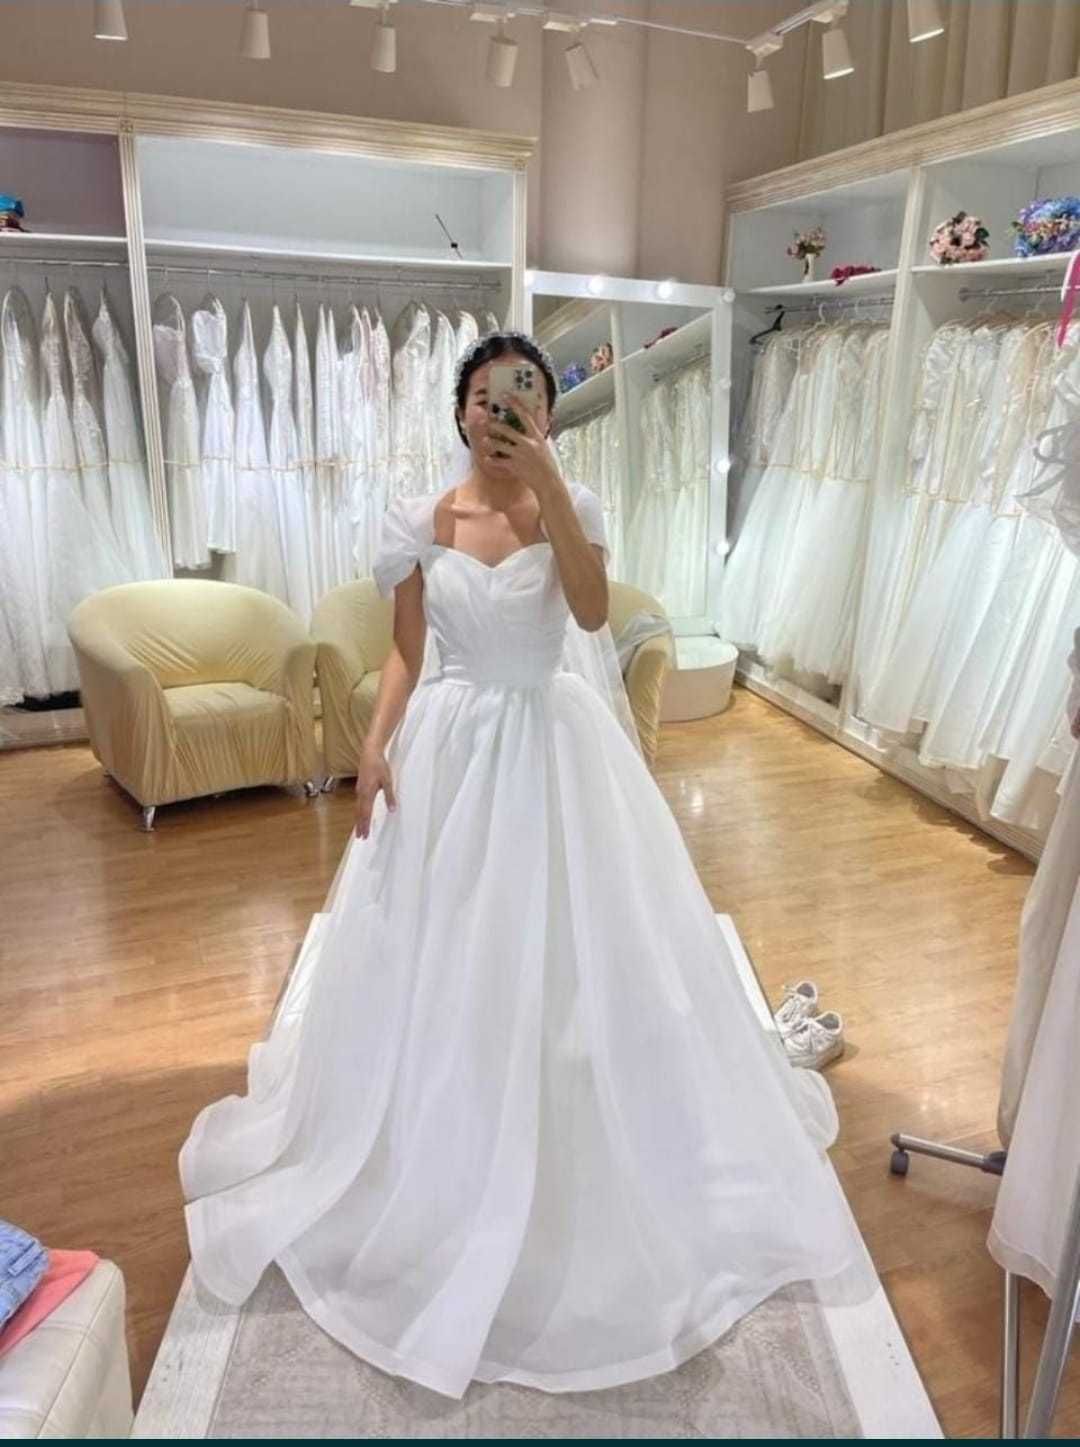 Свадебное платье)